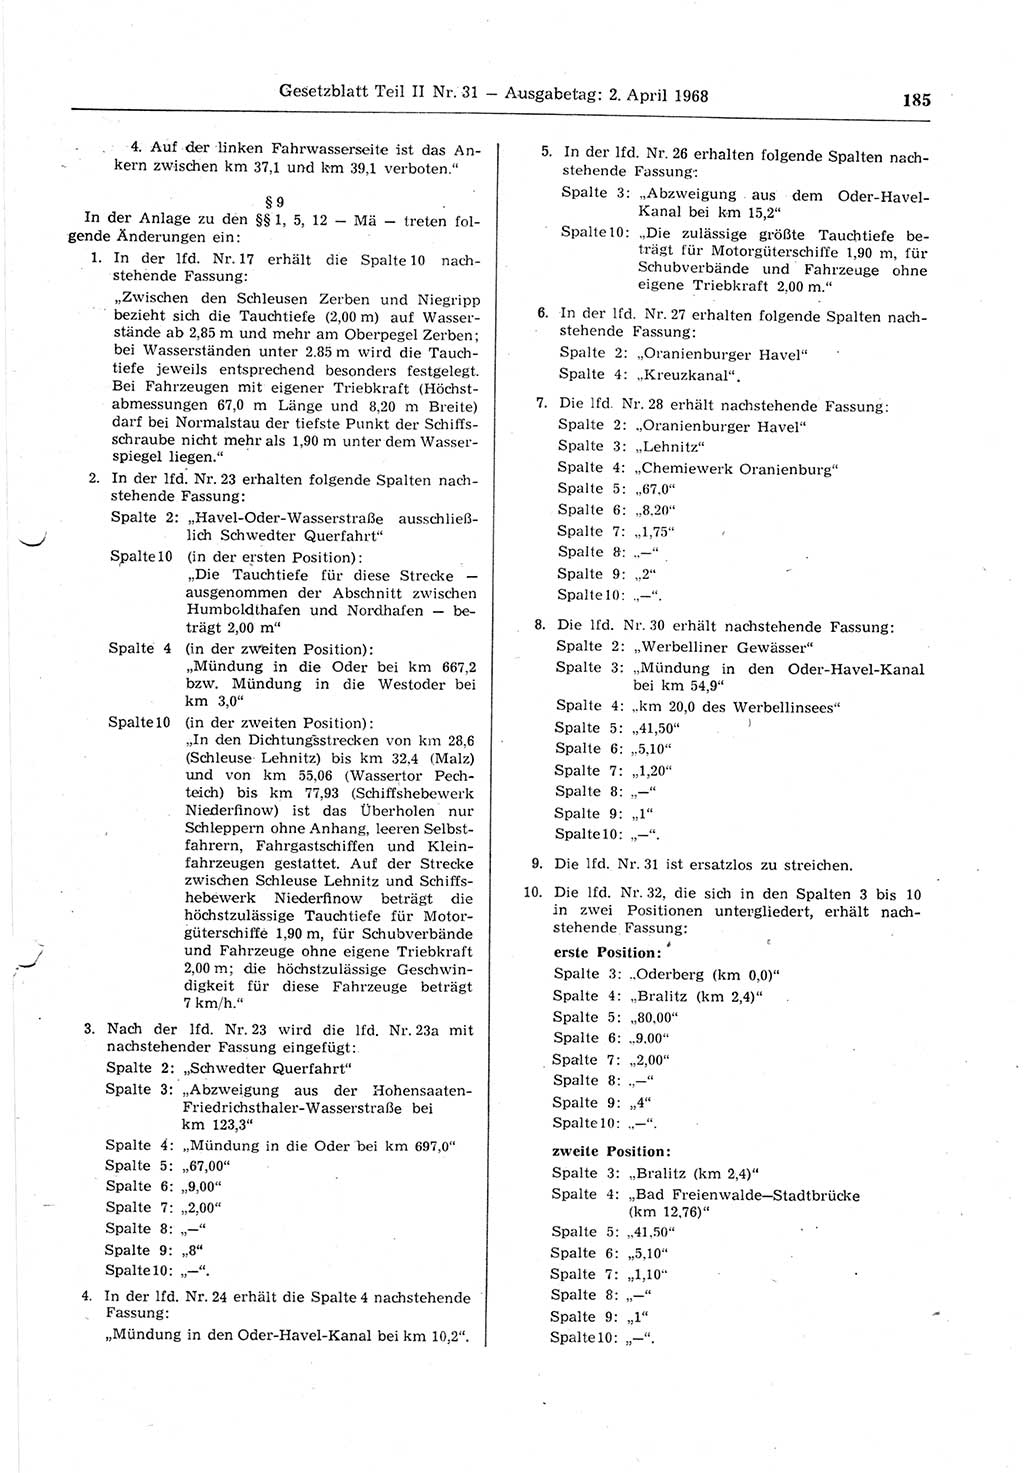 Gesetzblatt (GBl.) der Deutschen Demokratischen Republik (DDR) Teil ⅠⅠ 1968, Seite 185 (GBl. DDR ⅠⅠ 1968, S. 185)